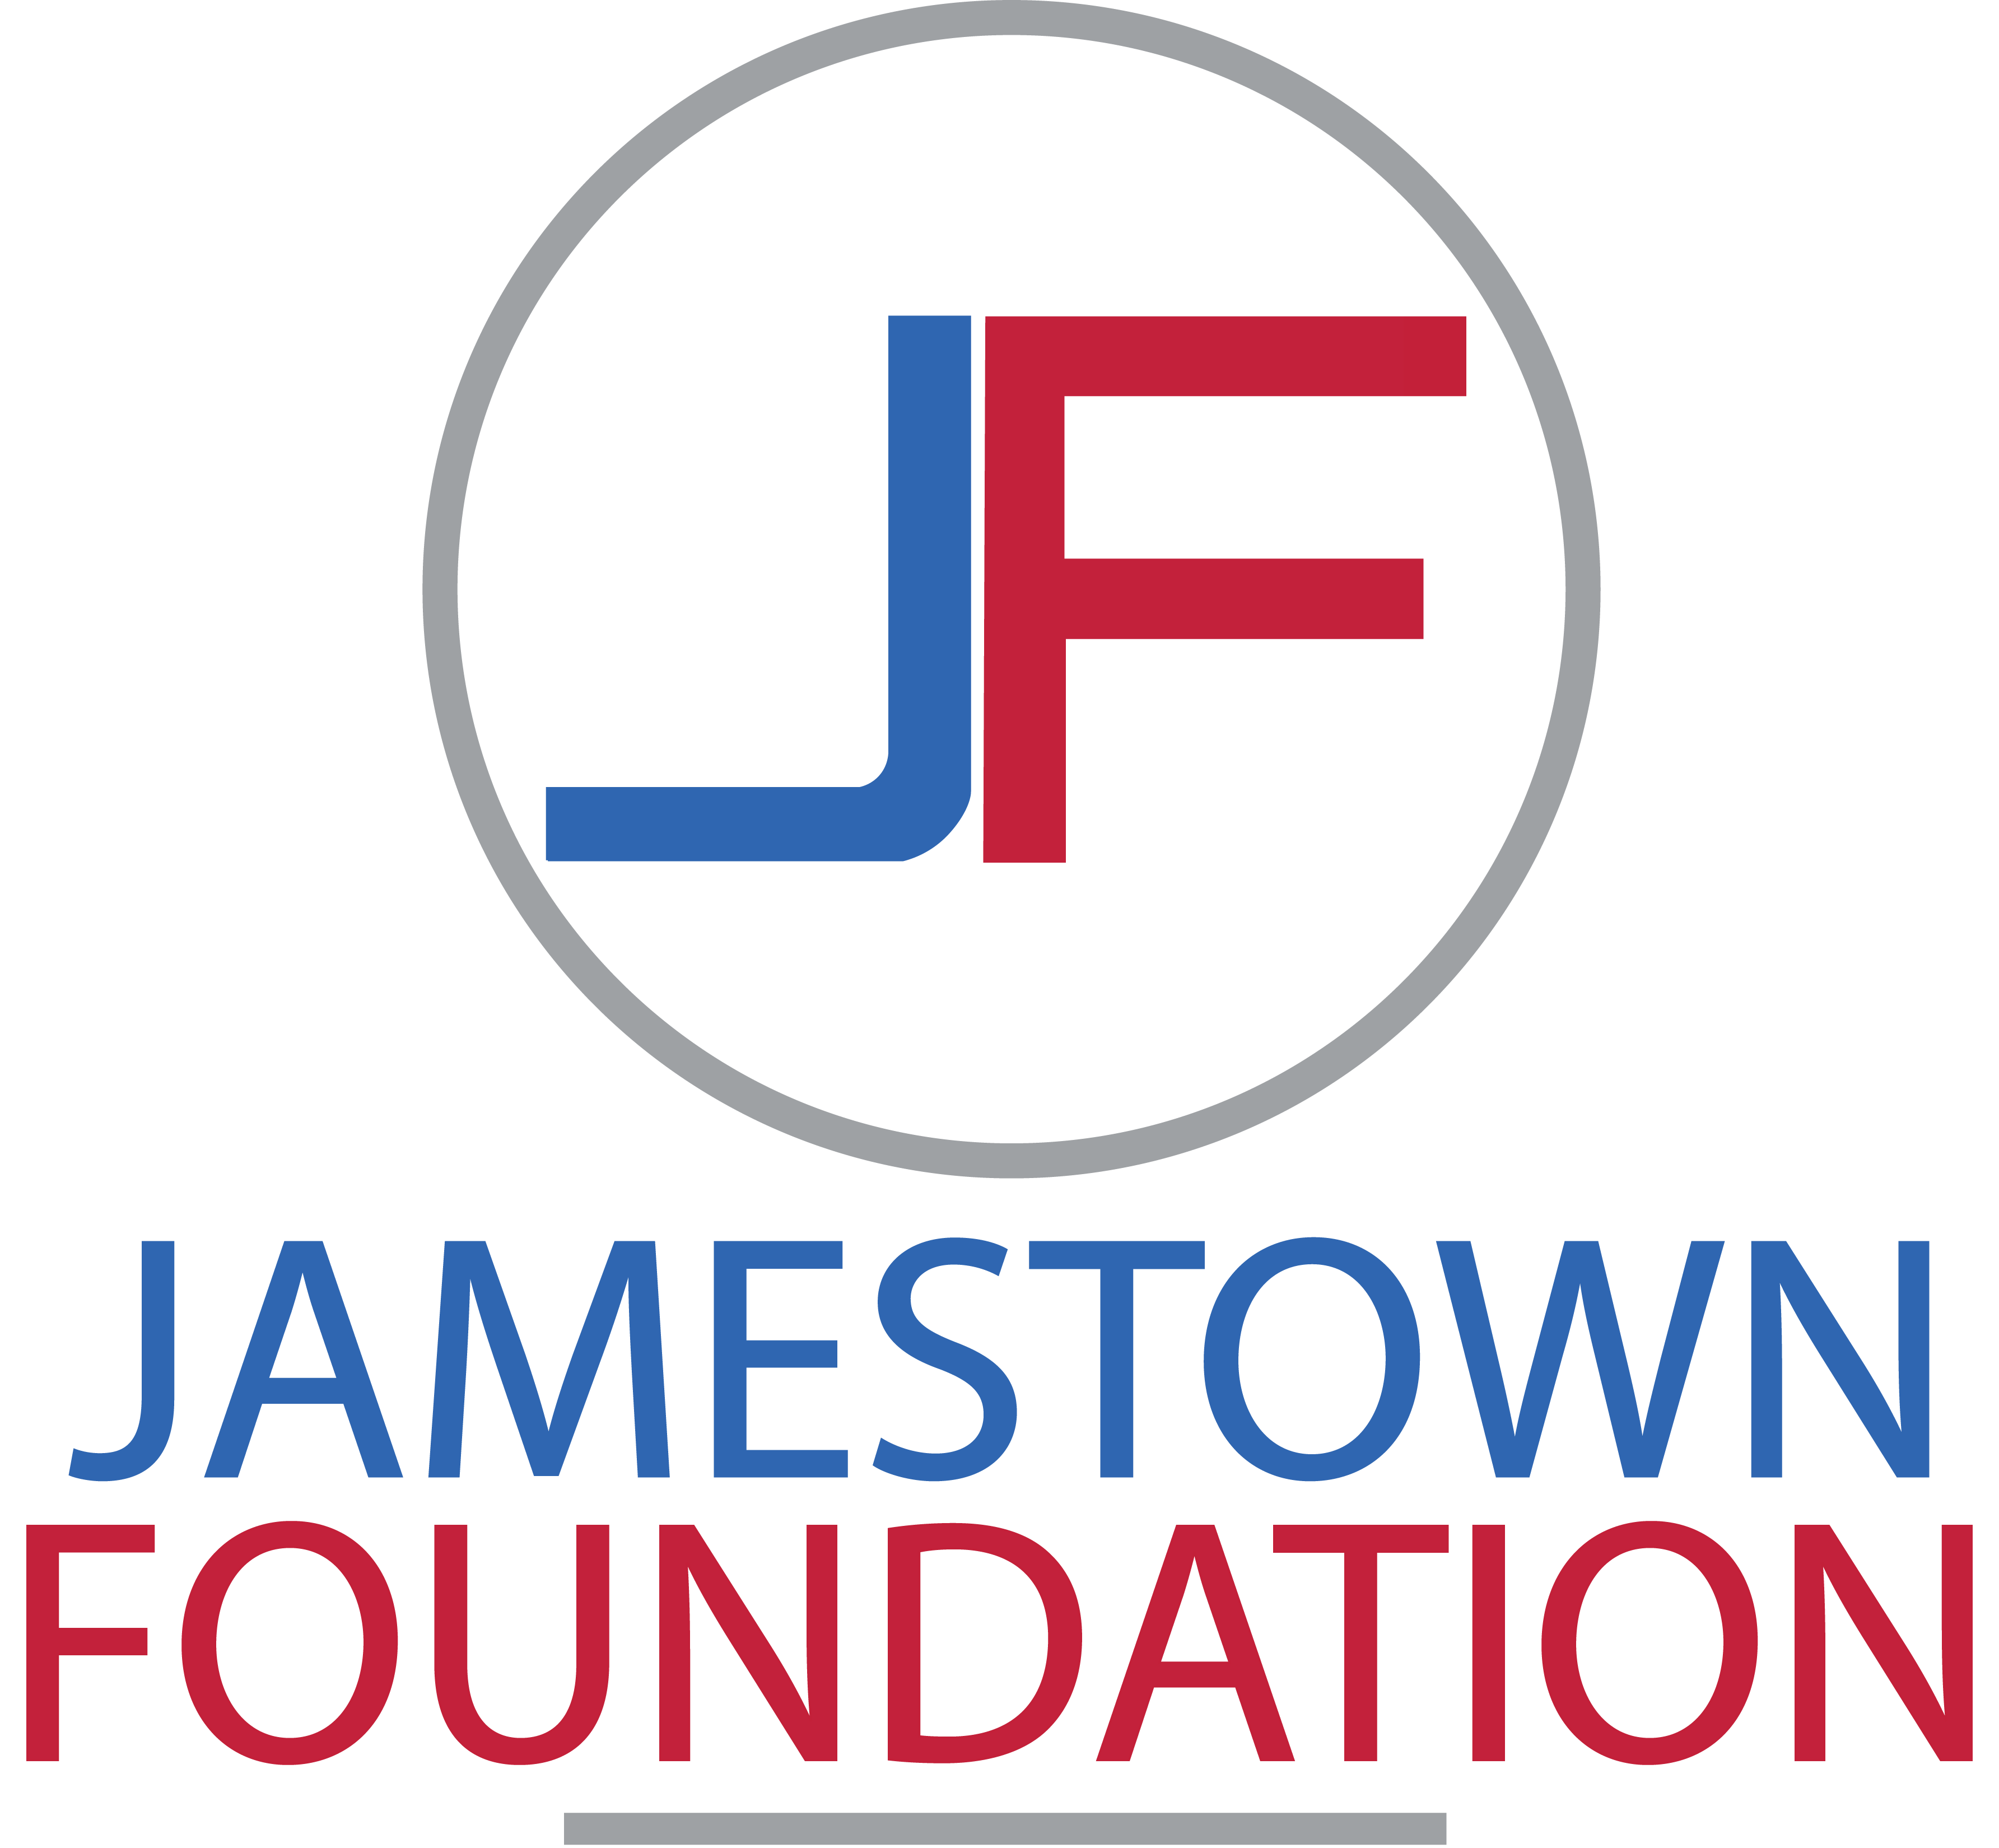 Jamestown Foundation